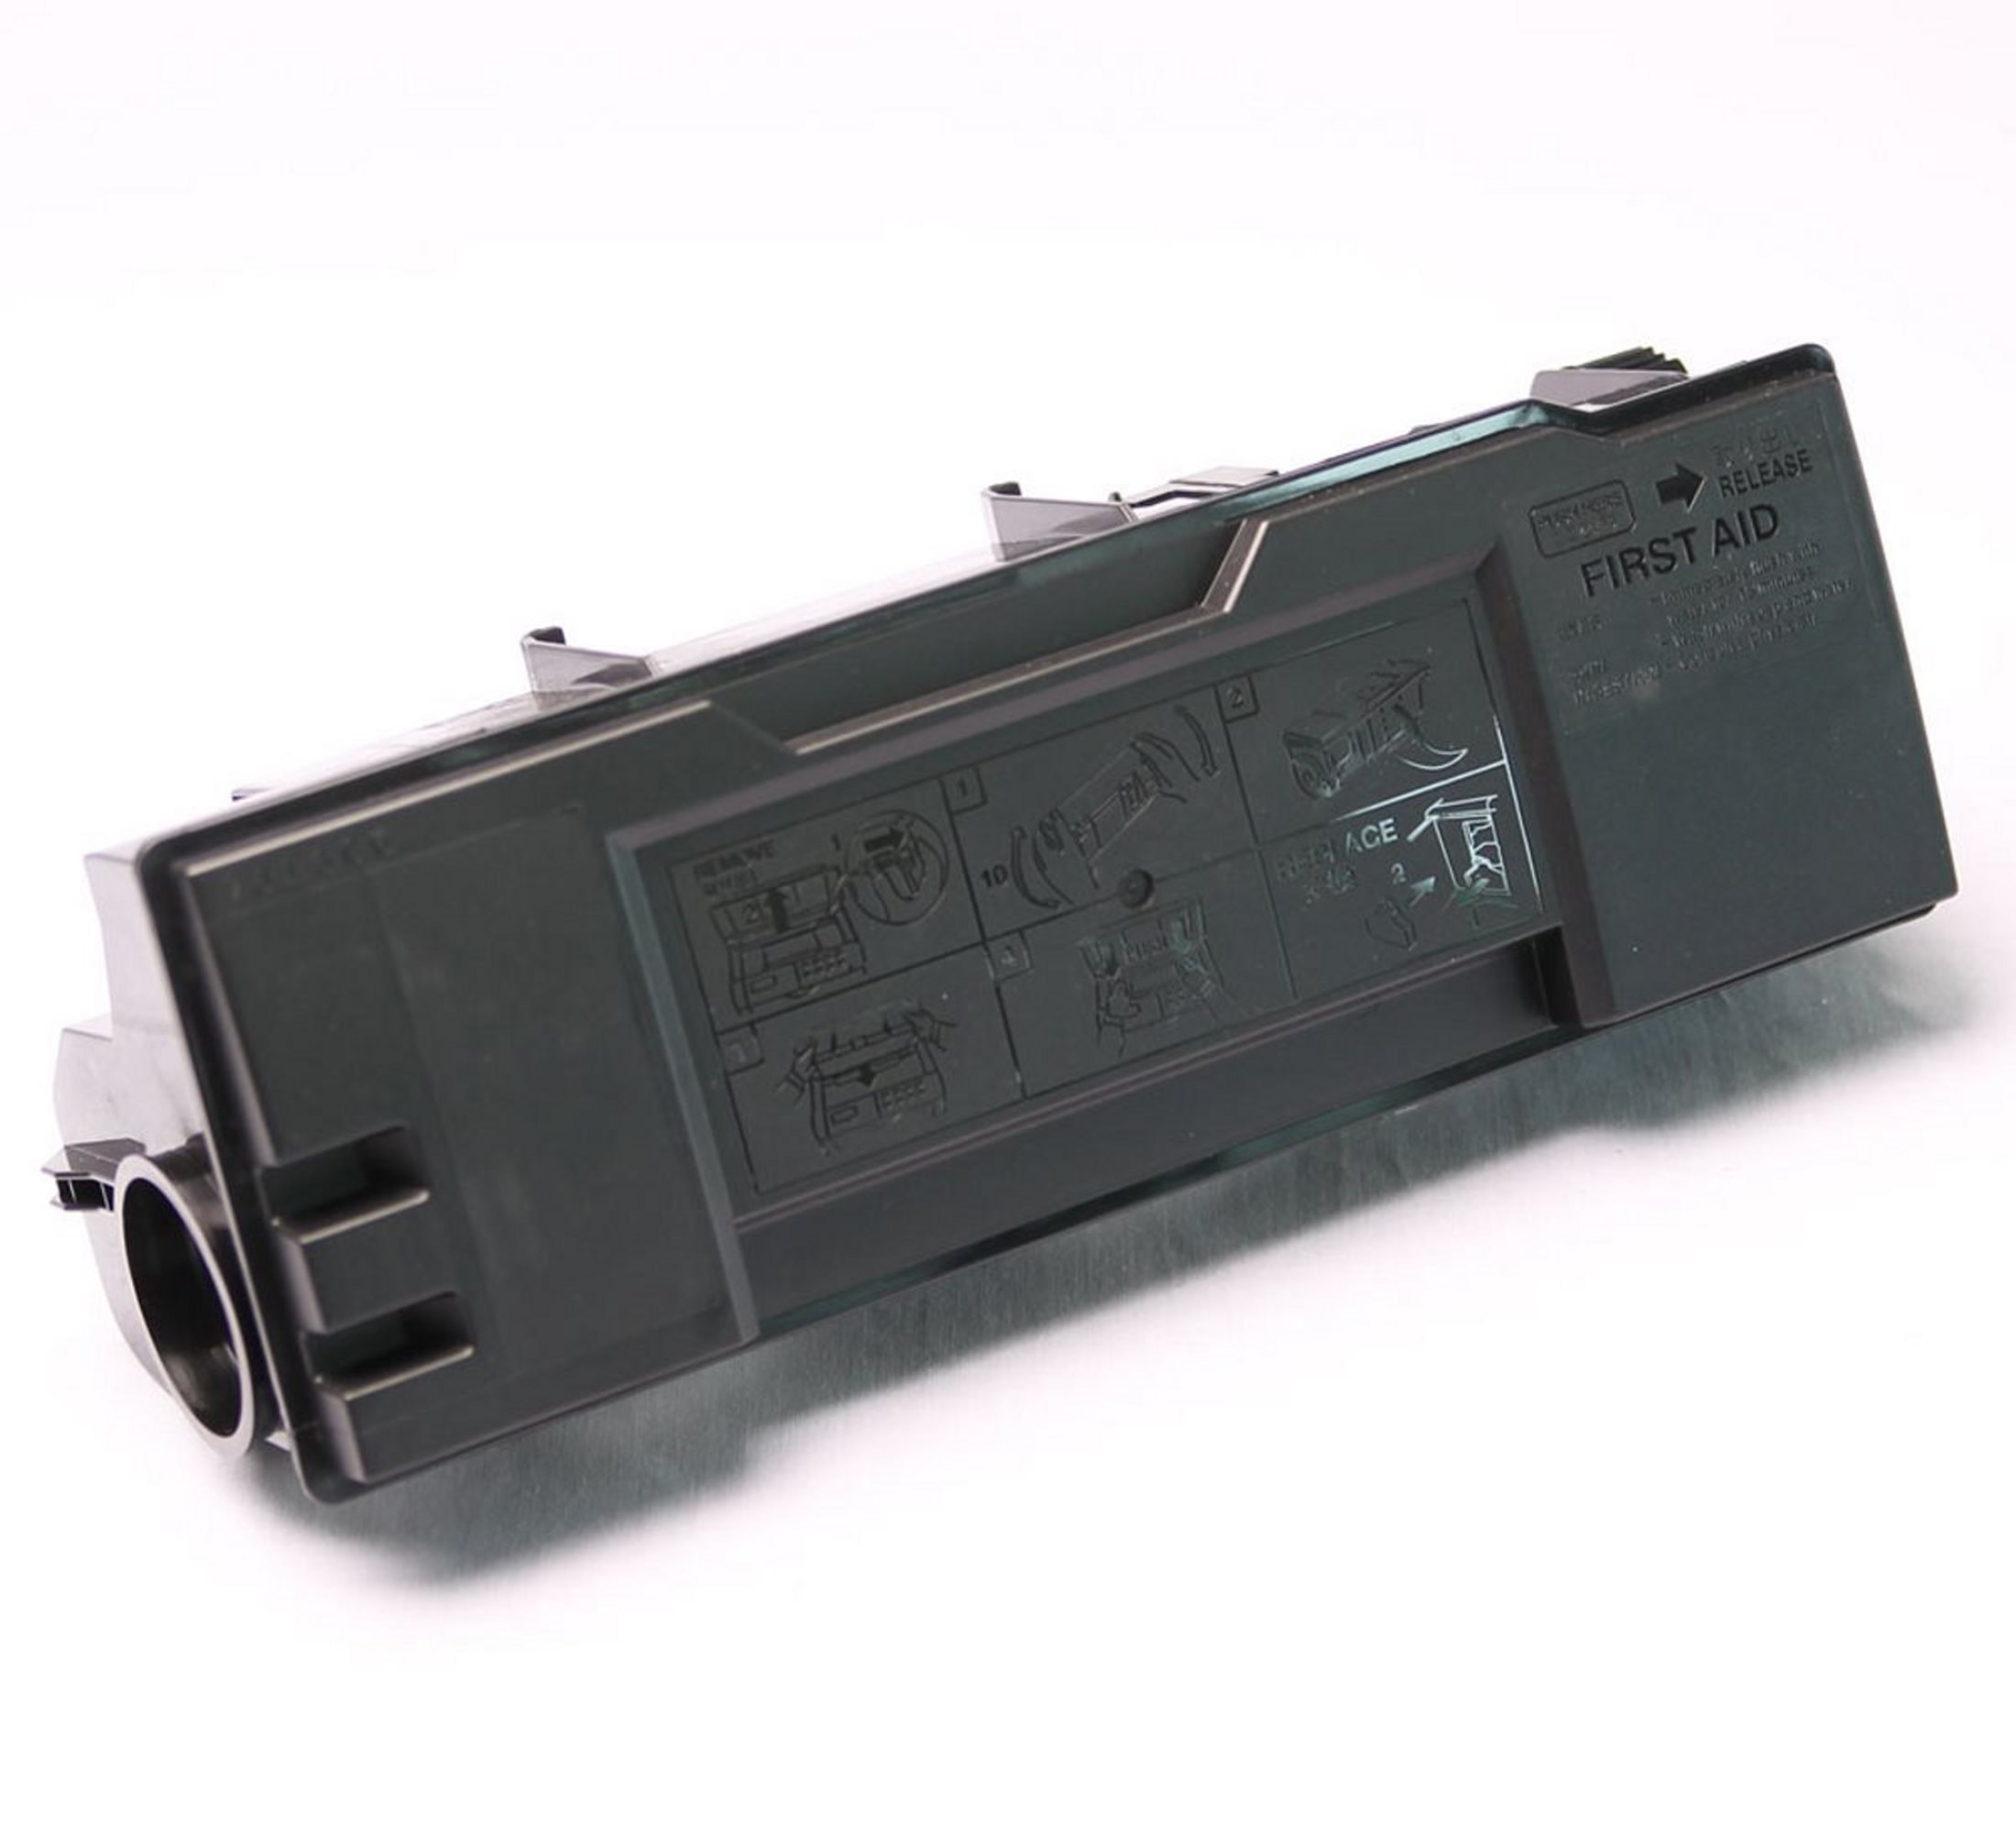 37027060) Toner (TK-60 ABC BLACK Kompatibler